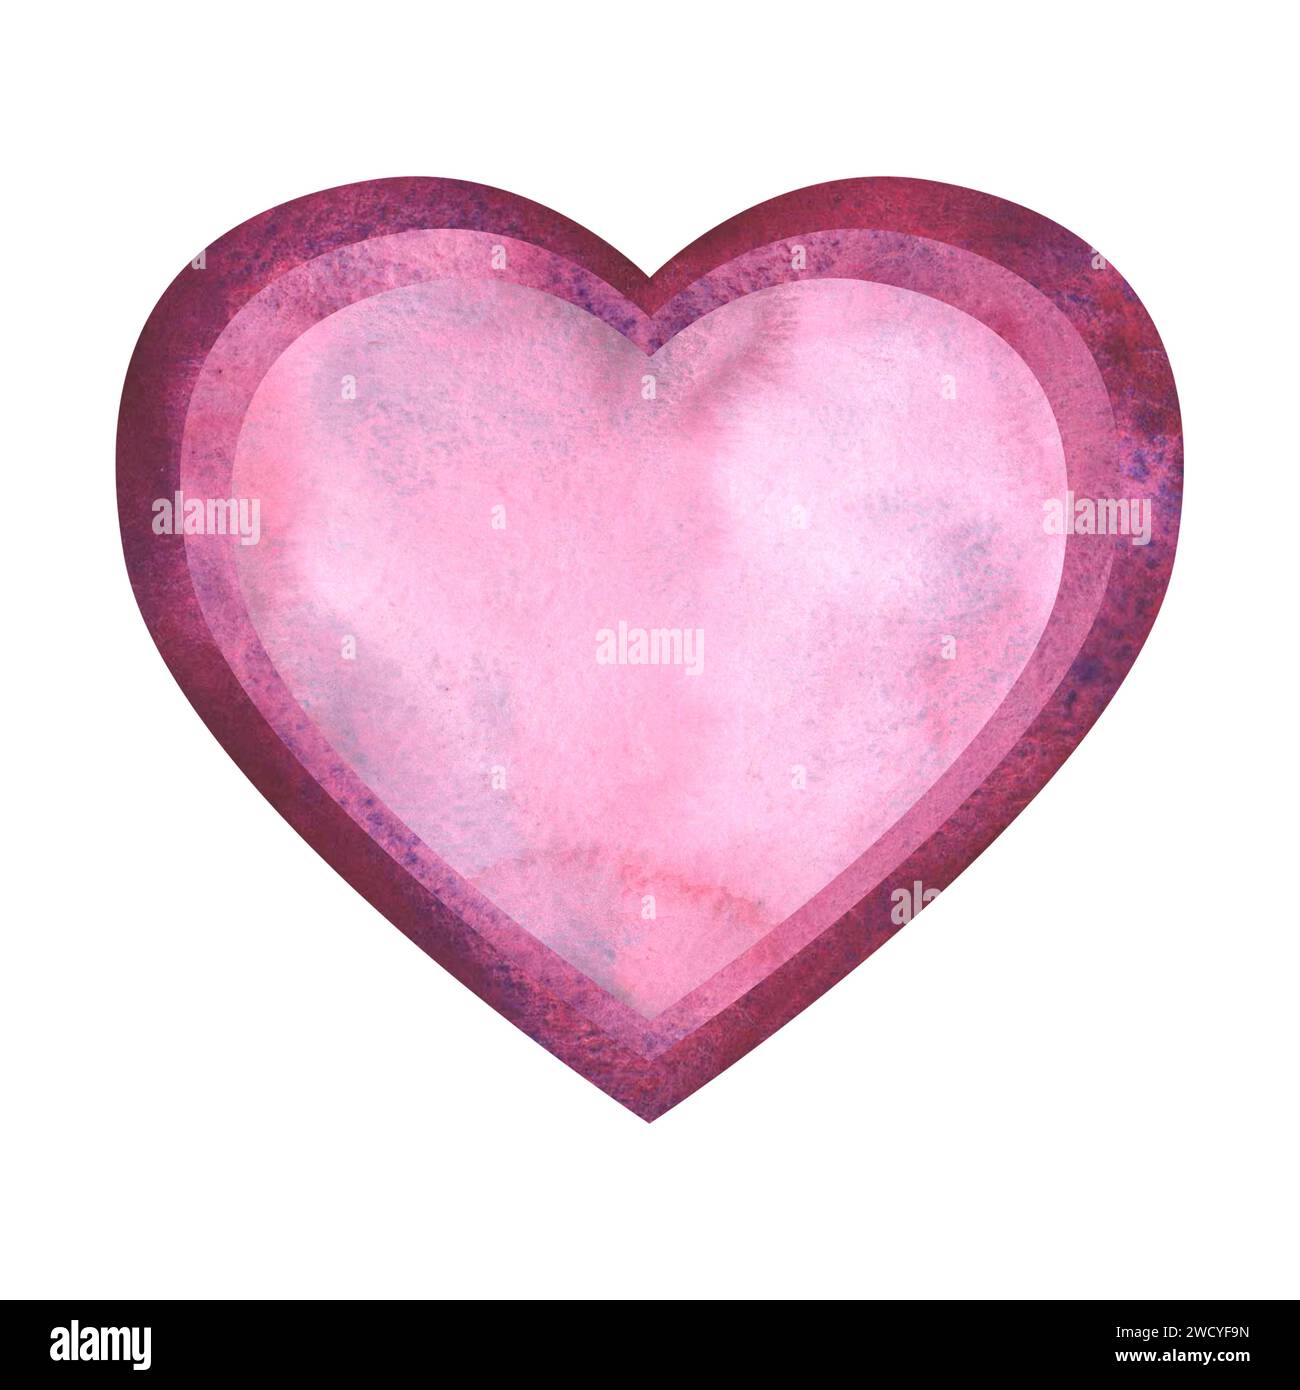 Semplice cuore lilla rosa acquerello per un biglietto da visita o una t-shirt di San Valentino. Romanticismo, relazione e amore. Illustrazione del cuore. Disegno a mano Foto Stock